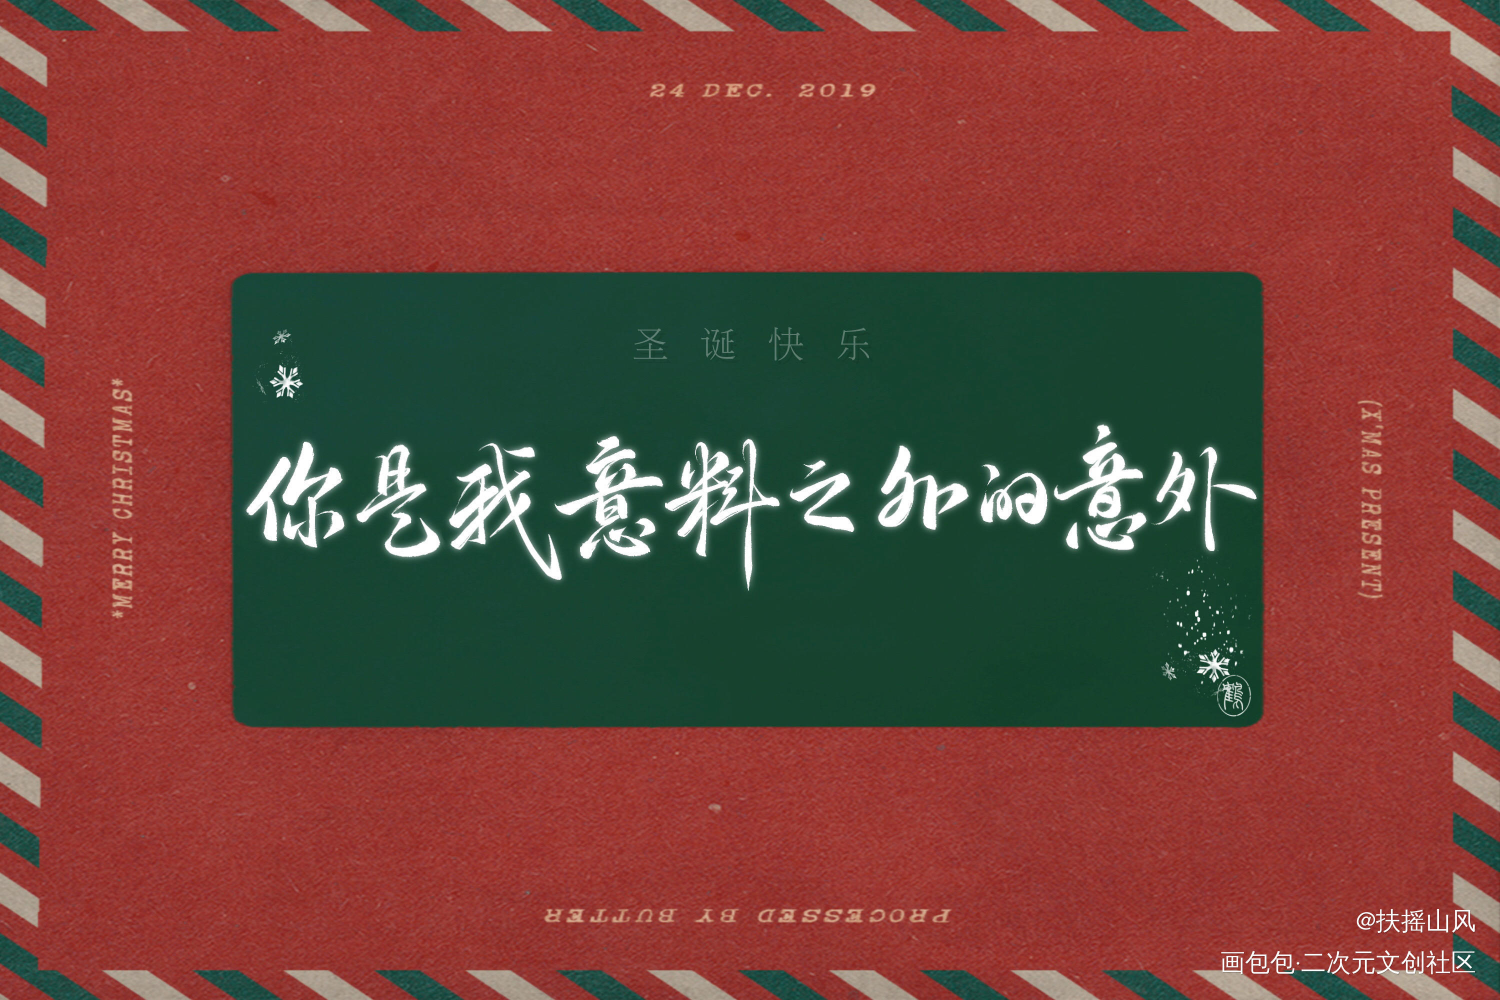 圣诞快乐_撒野蒋丞顾飞同人字体设计巫哲板写绘画作品